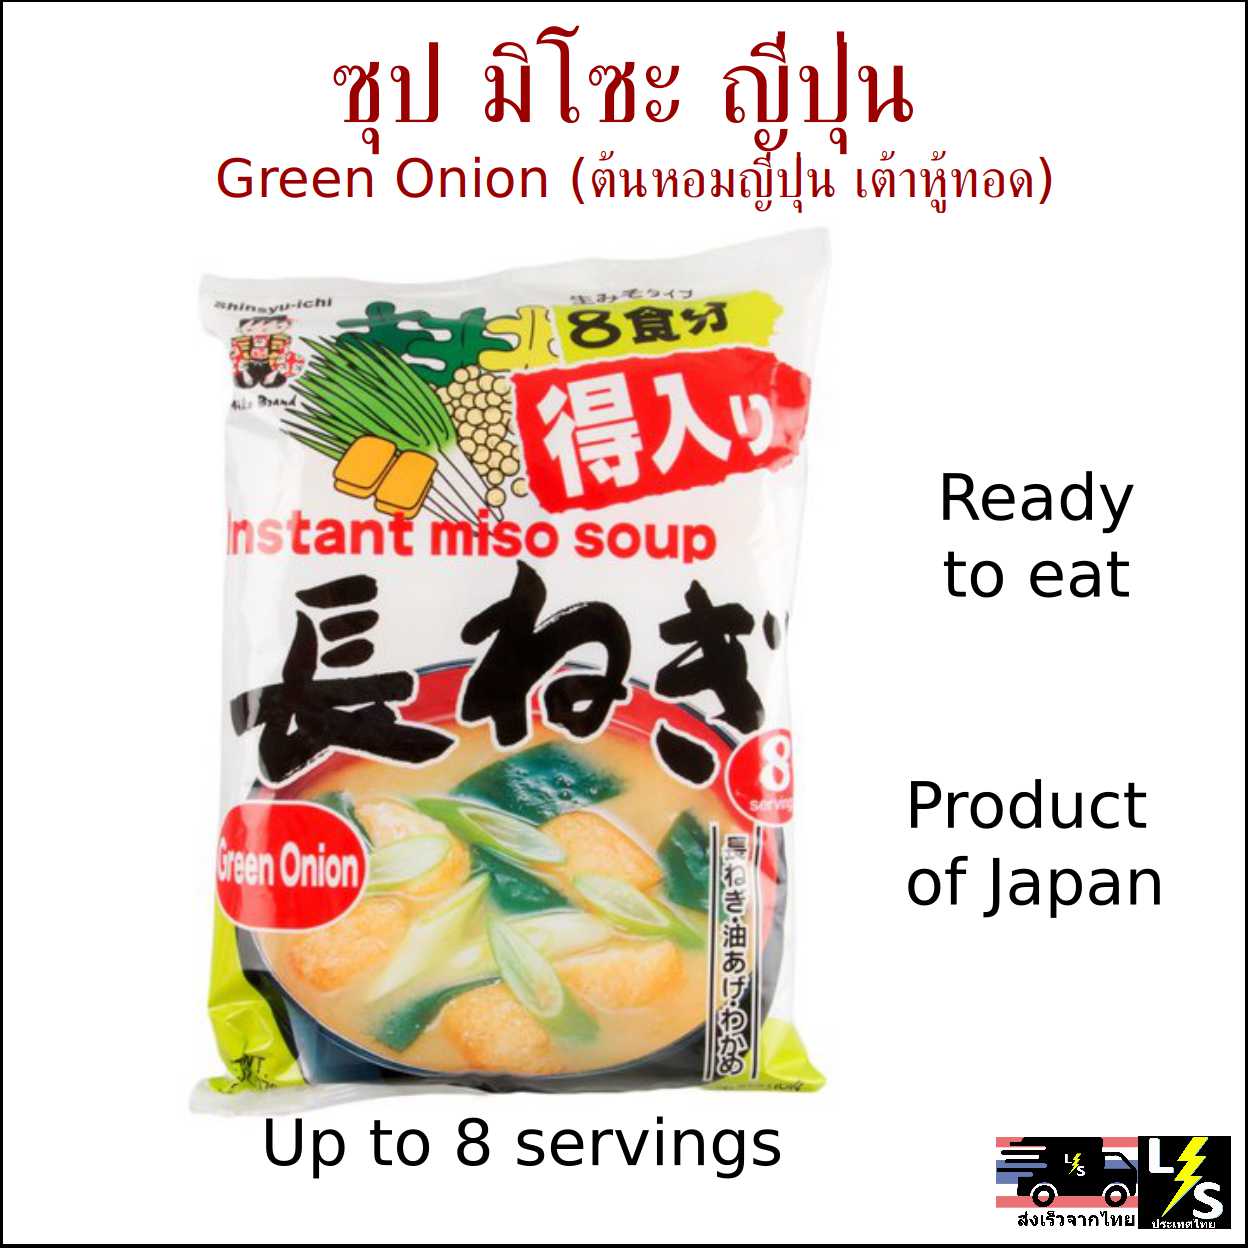 ซุป มิโซะ ญี่ปุ่น ต้นหอมญี่ปุ่น เต้าหู้ทอด พร้อมรับประทาน [ส่งจากไทย] -- อาหารสำเร็จรูป ซุปมิโซะพร้อมรับประทาน ต้นหอม เขียว ญี่ปุ่น สาหร่าย Japanese Instant Ready to Cook Eat Miso Soup with Japanese Green Onion Fried Tofu Seaweed